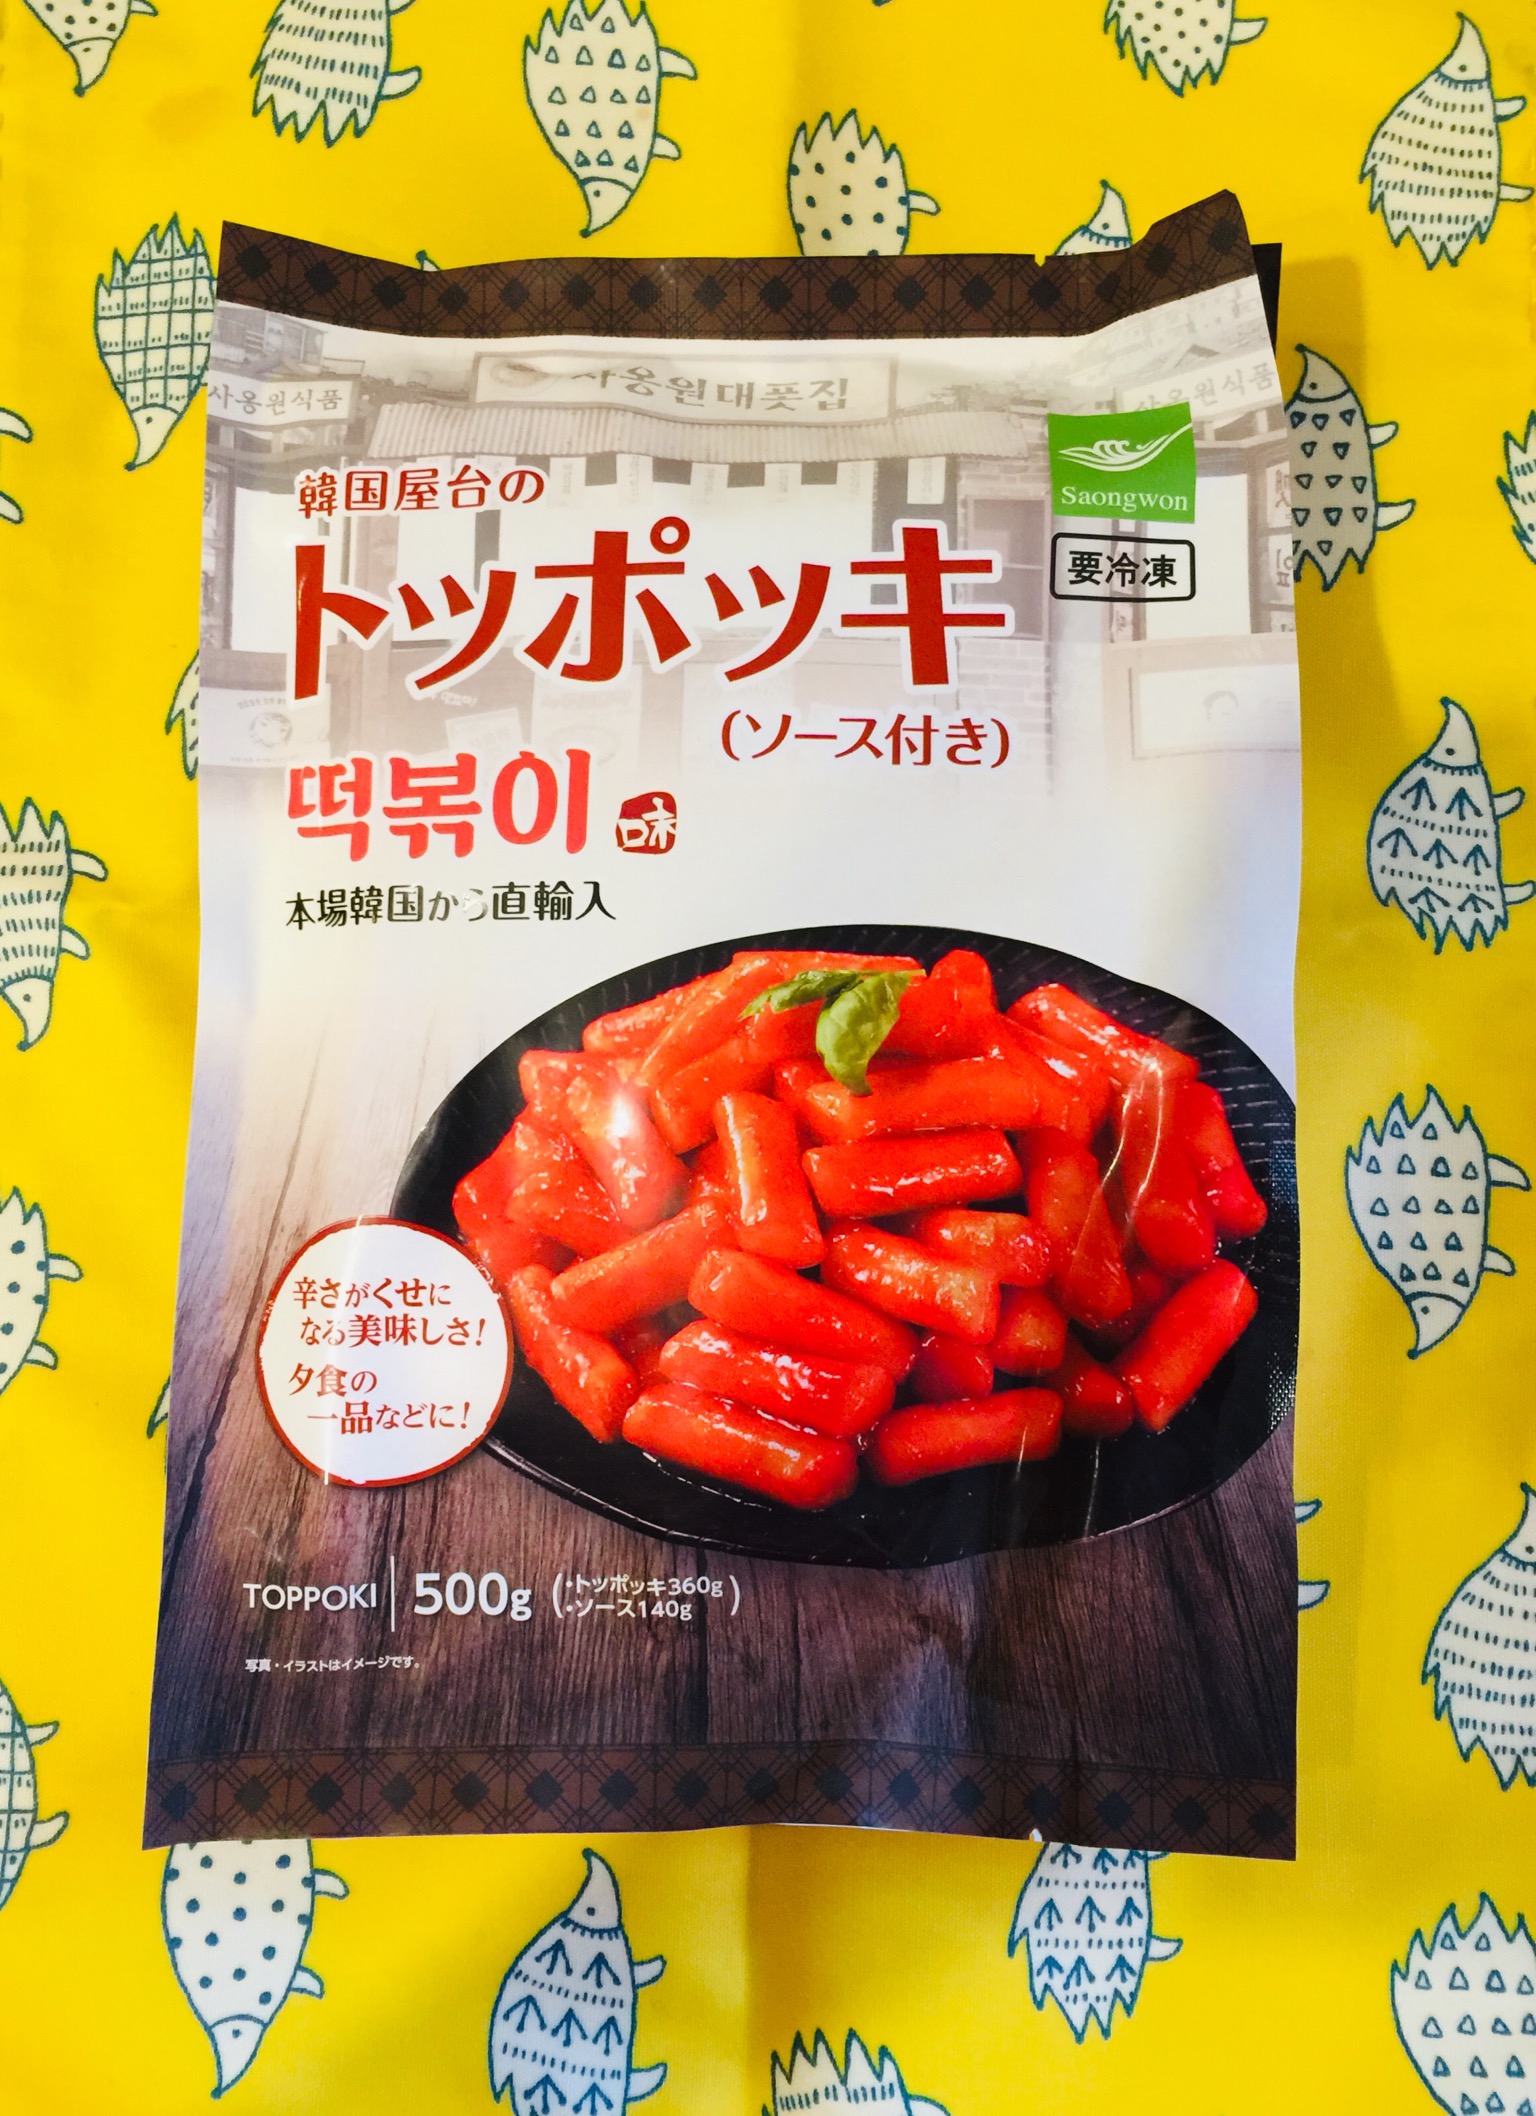 業務スーパー 冷凍トッポッキ 韓国産 業務スーパーの商品をレポートするブログ